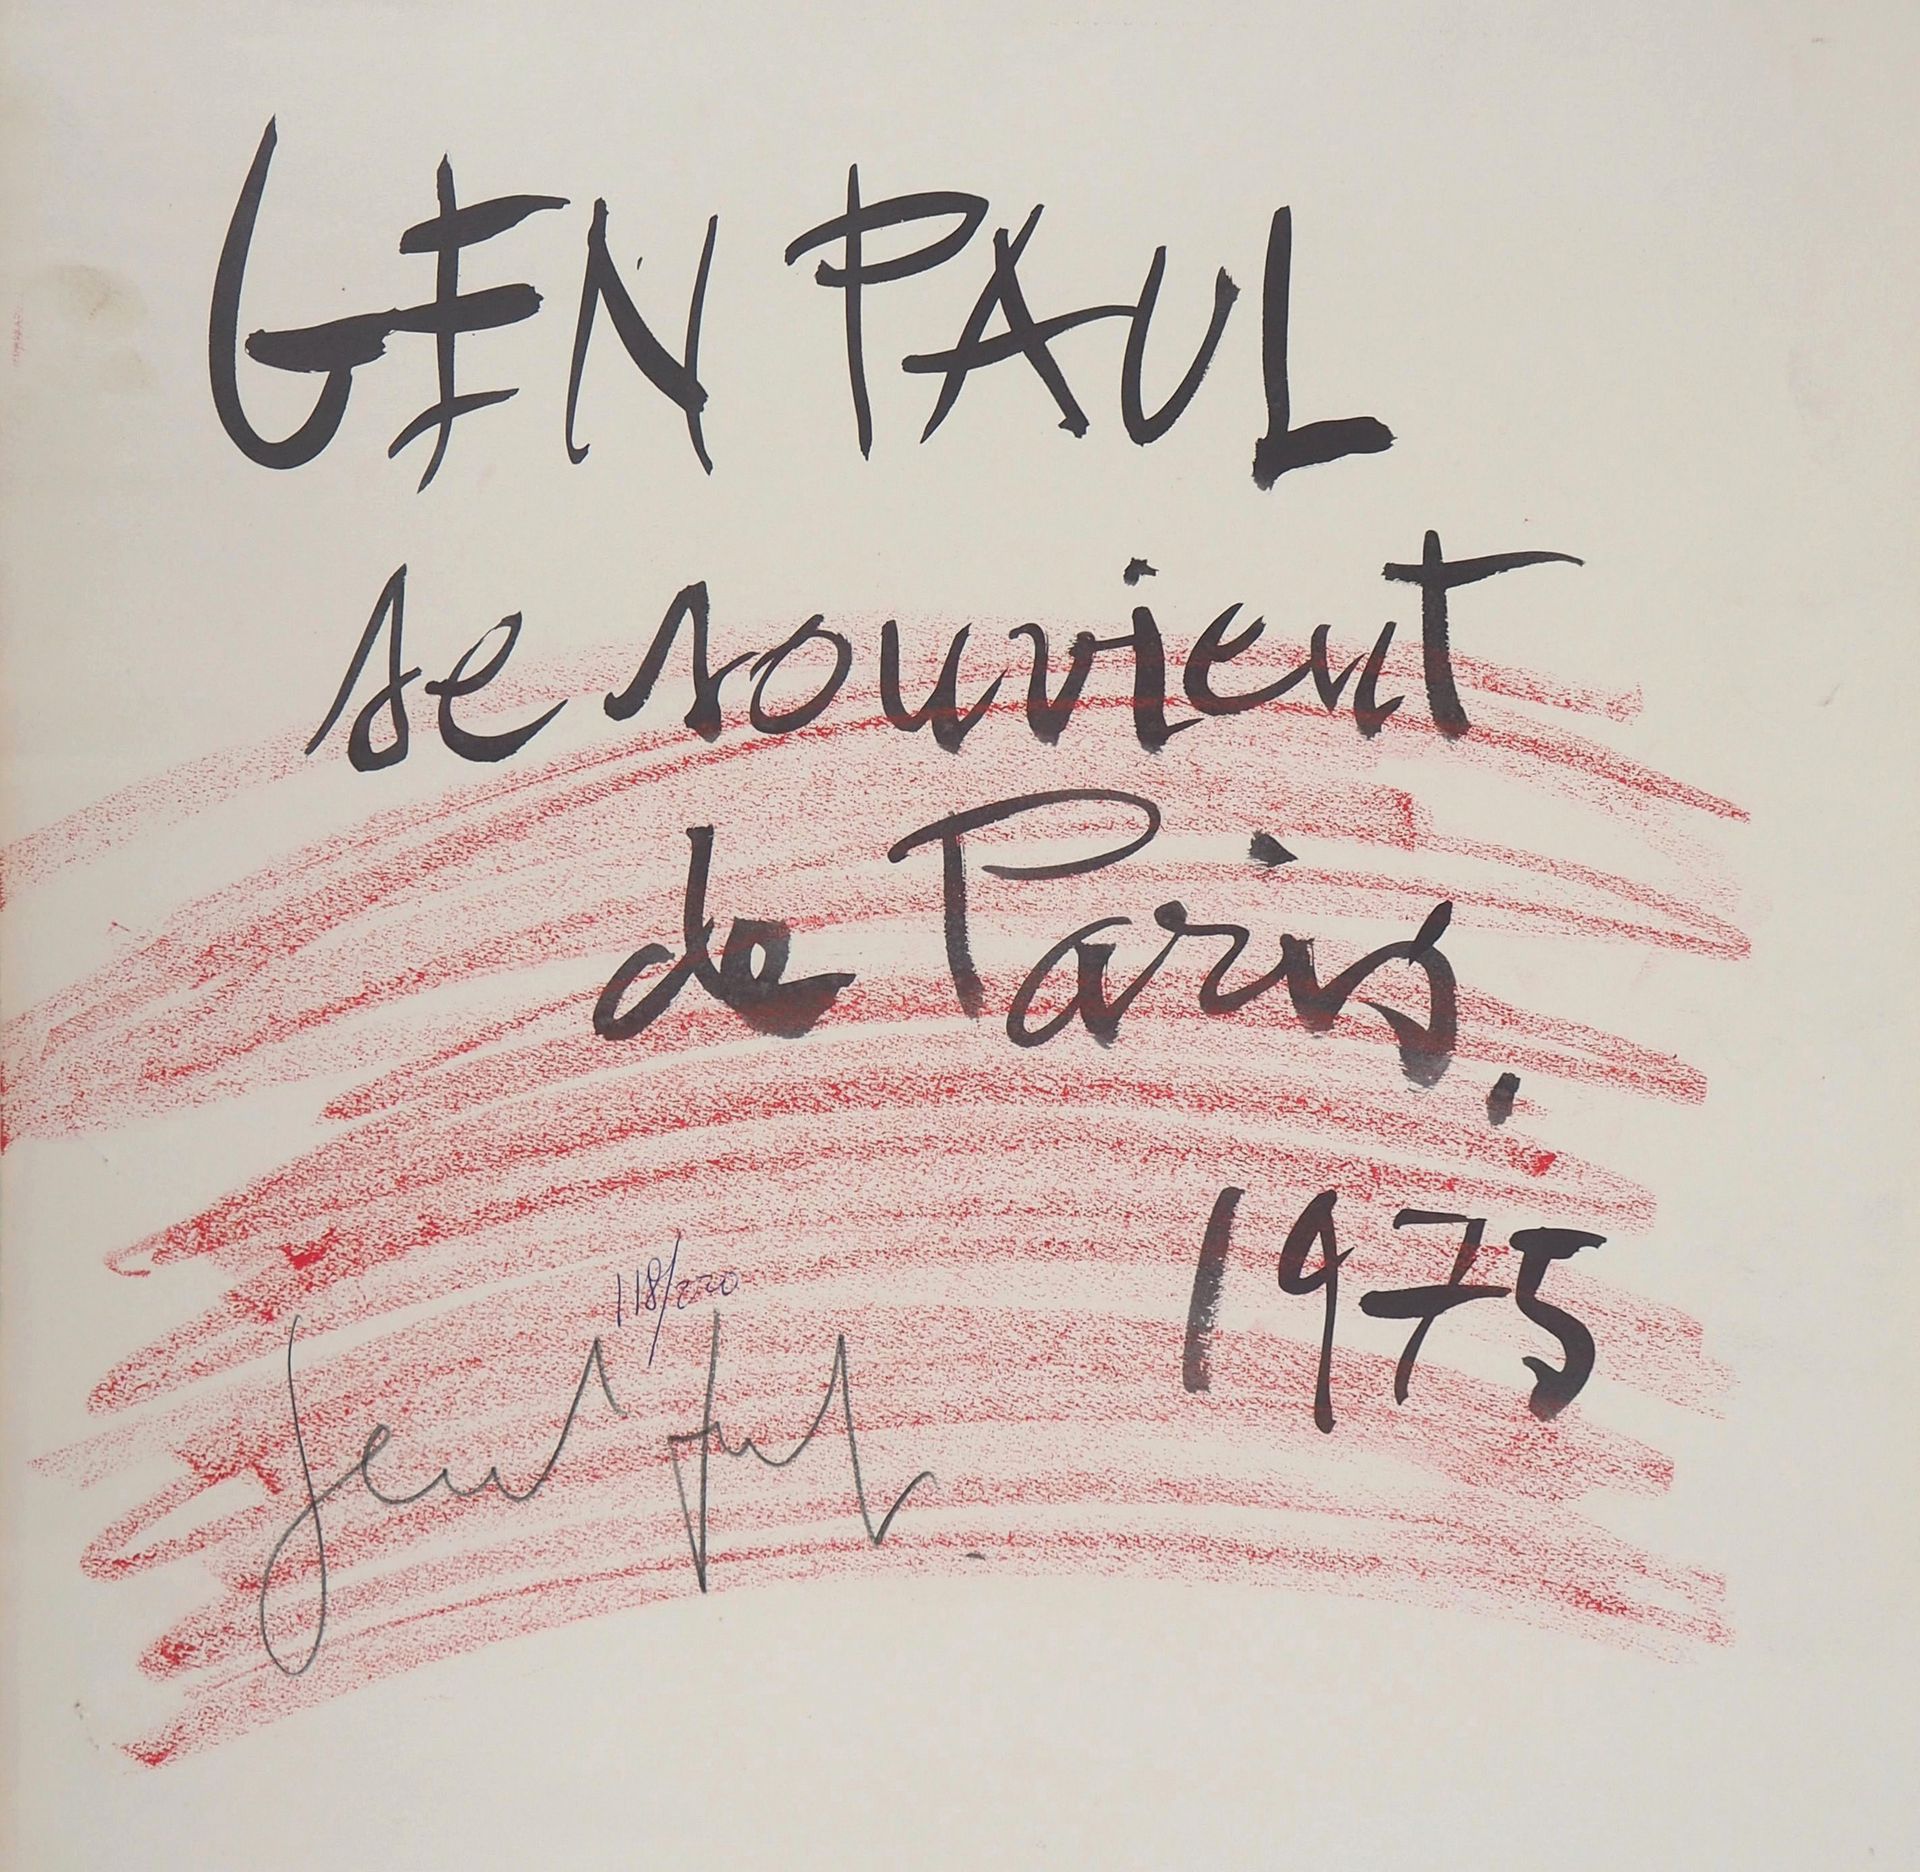 GEN PAUL 元宝

记忆中的巴黎，1975年

原始蚀刻画

铅笔签名的艺术家

纸上，48 x 48厘米

220上的编号

状况非常好，空白处有些轻微&hellip;